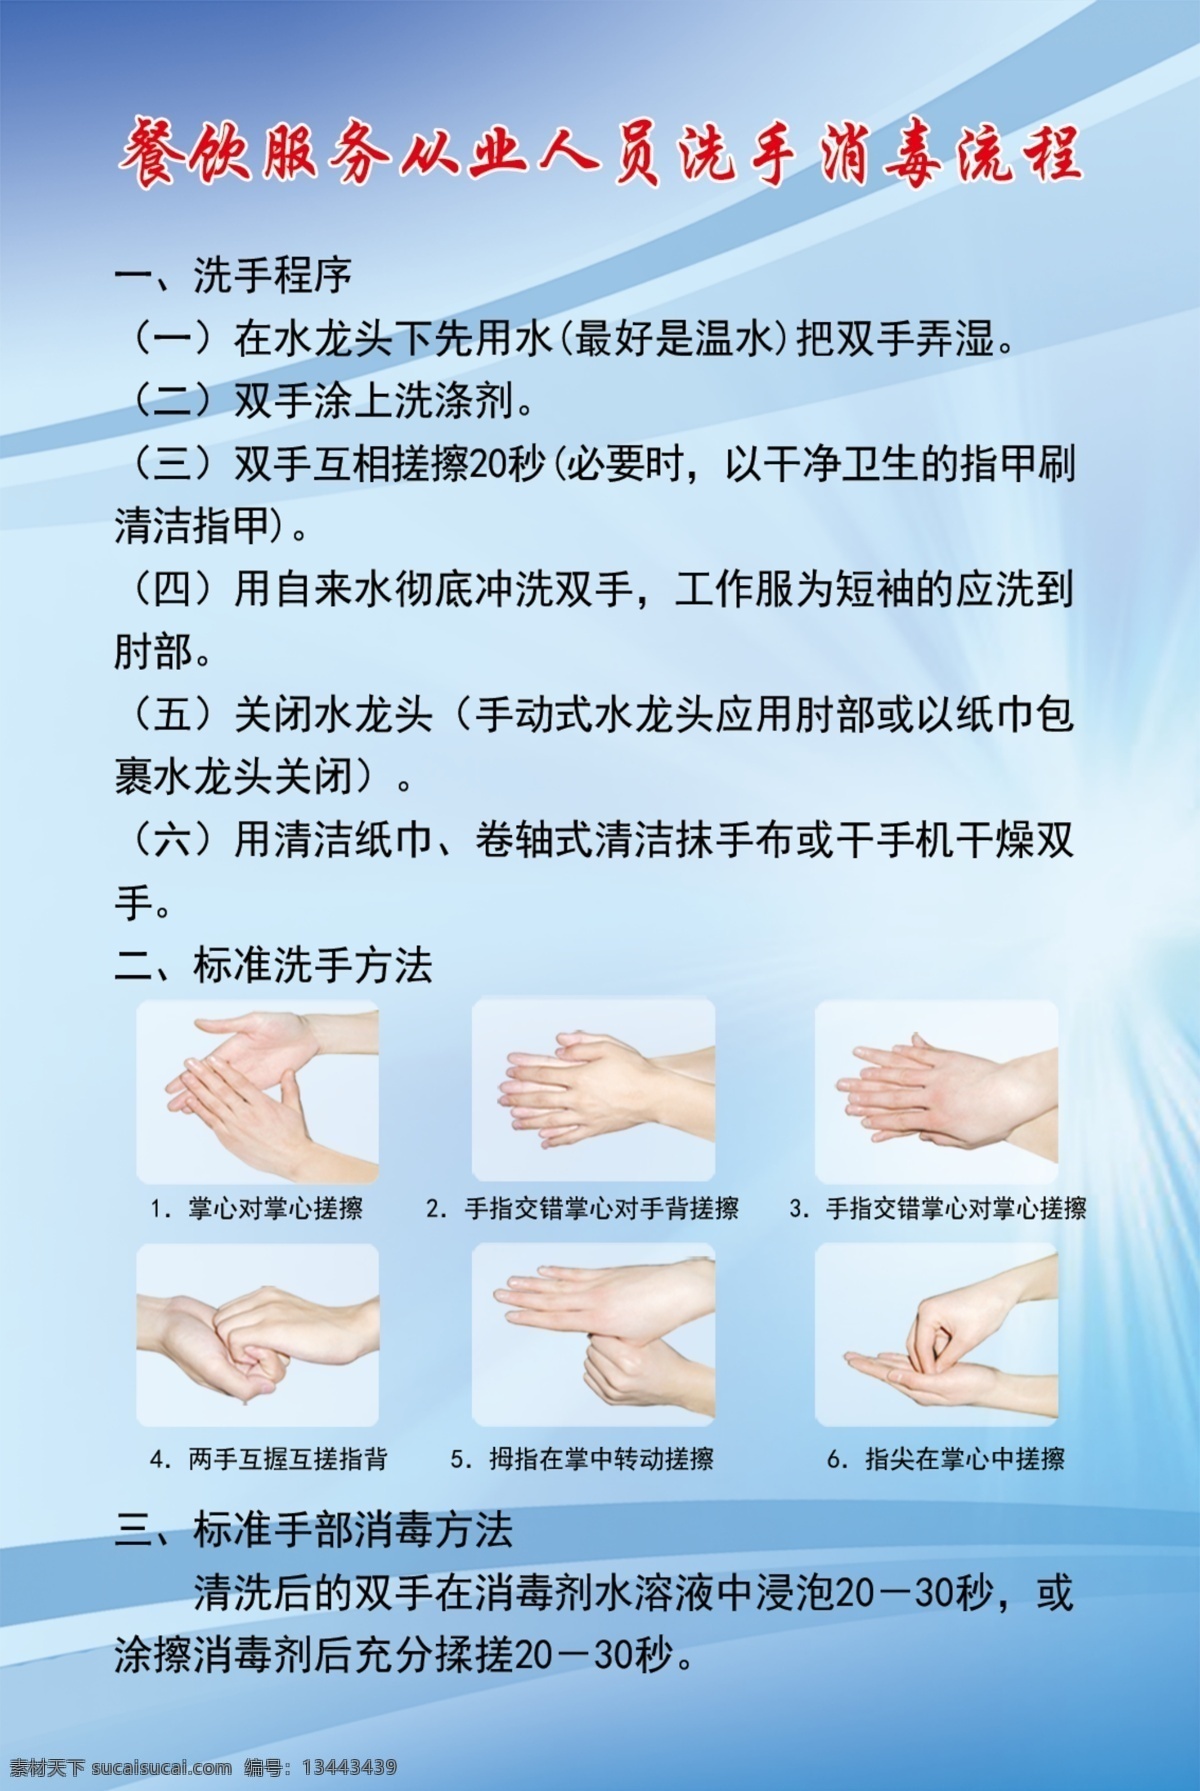 洗手六步骤 洗手 标准洗手方法 洗手流程 护士 卷袖子 水龙头下洗手 绿底 青底 流程底图 制度底图